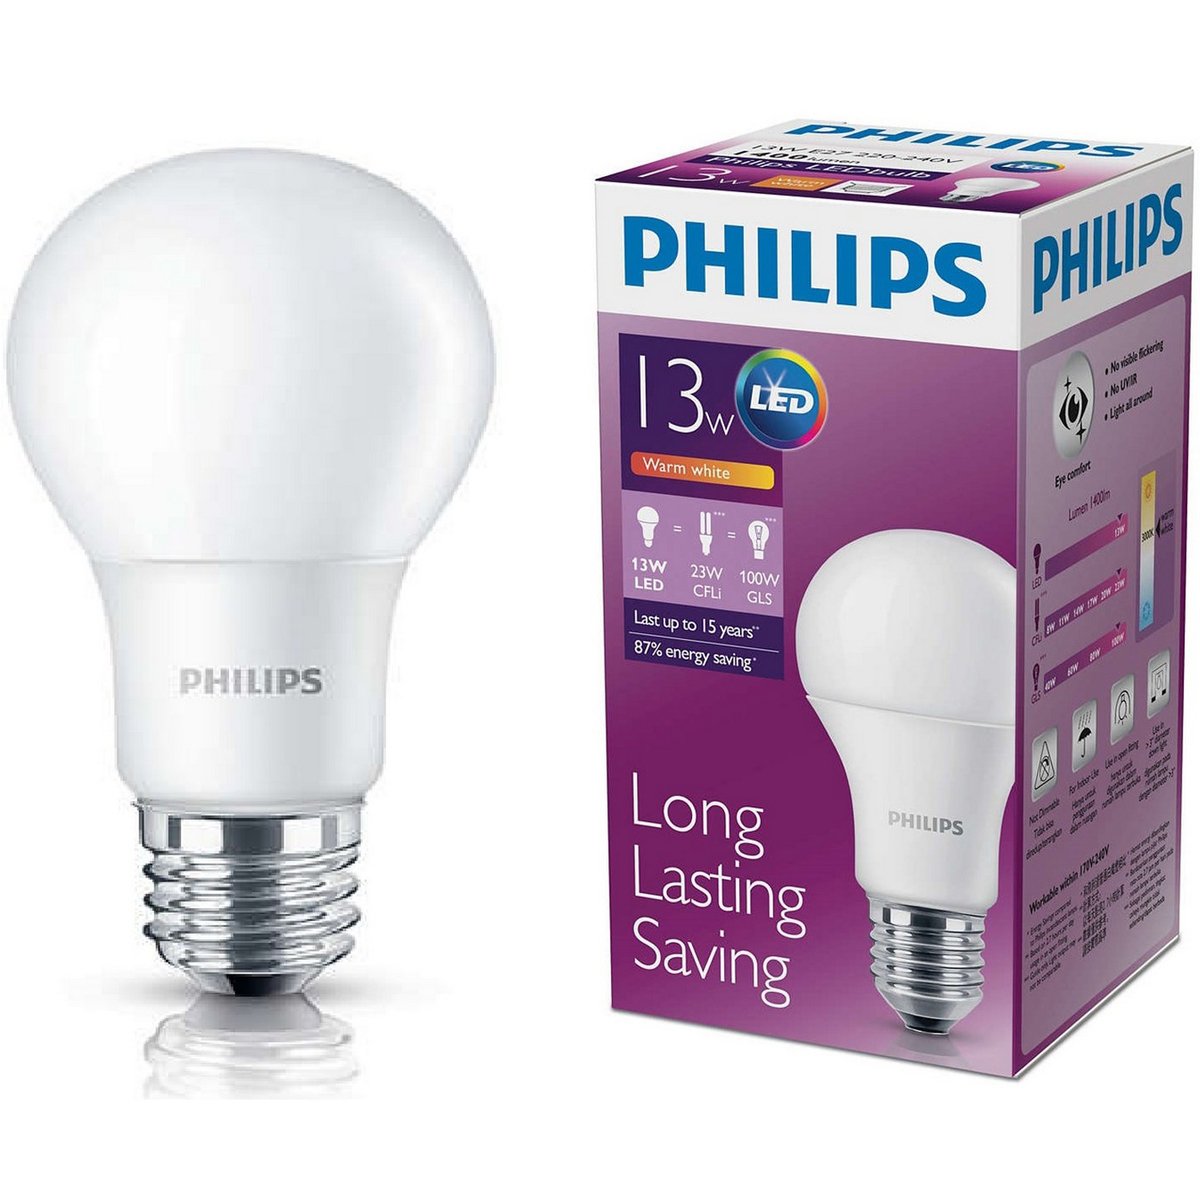 Philips LED Bulb 13W E27 2pcs Online at Best Price | LED | Lulu Kuwait